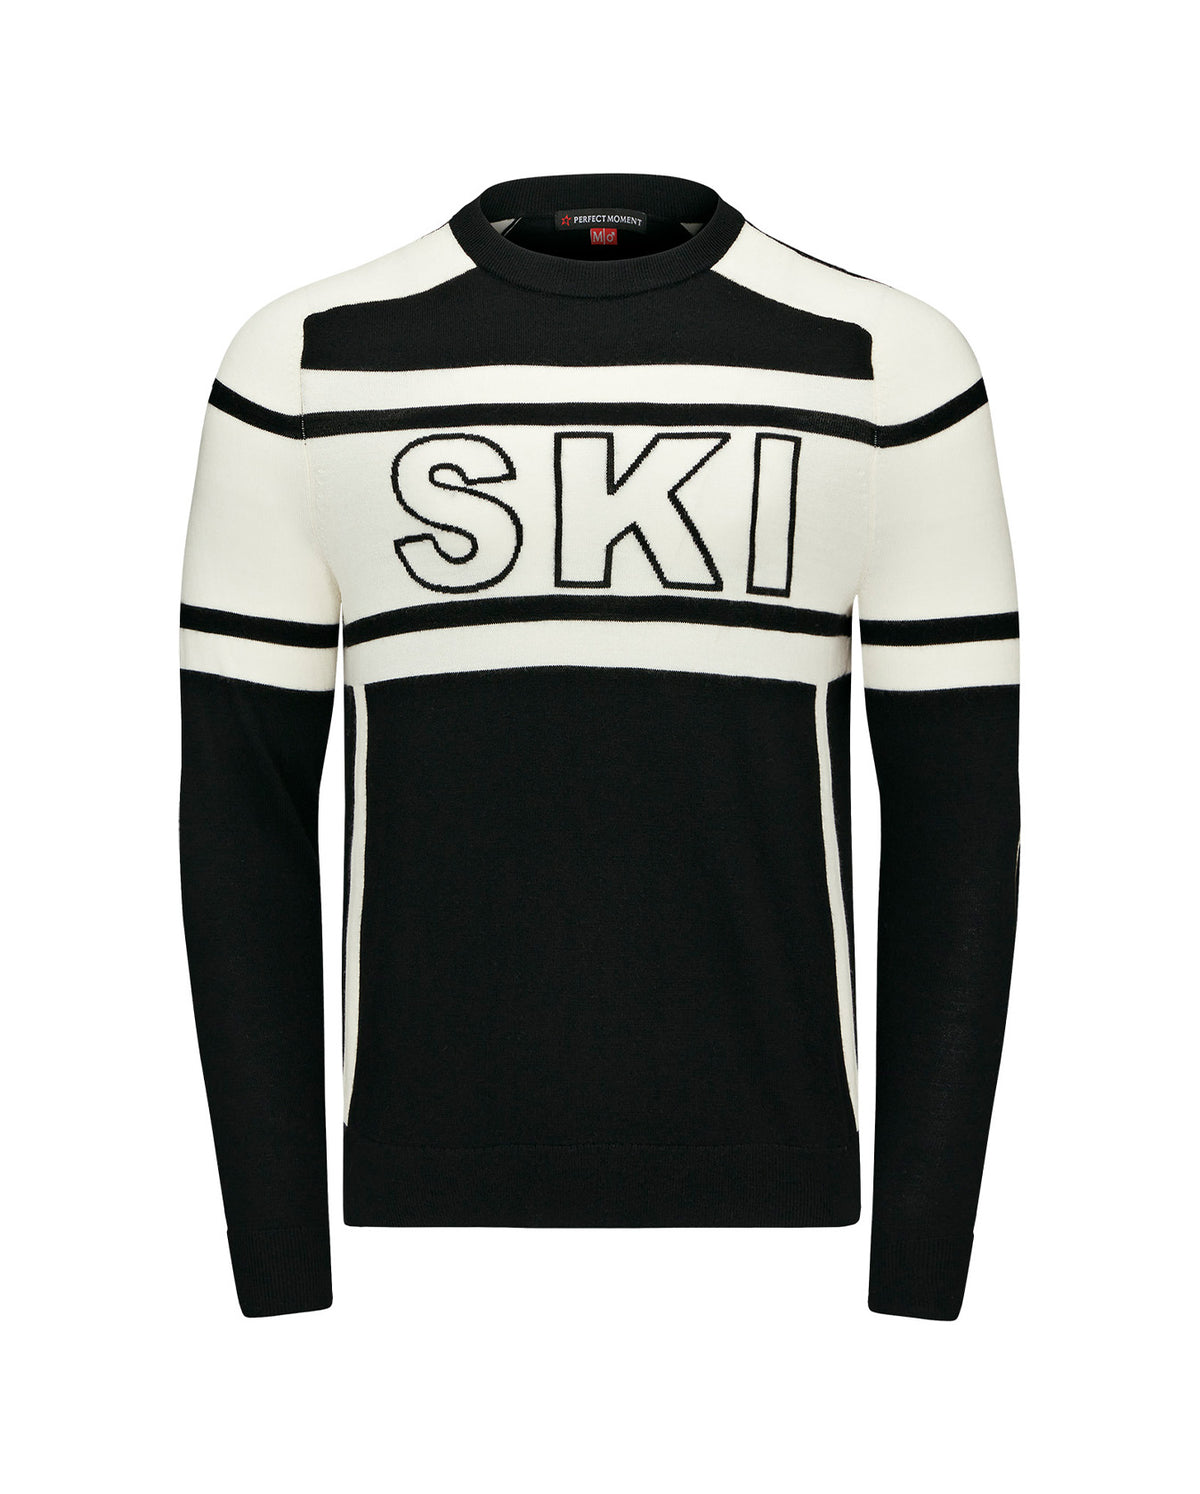 22 Ski Sweater - Black